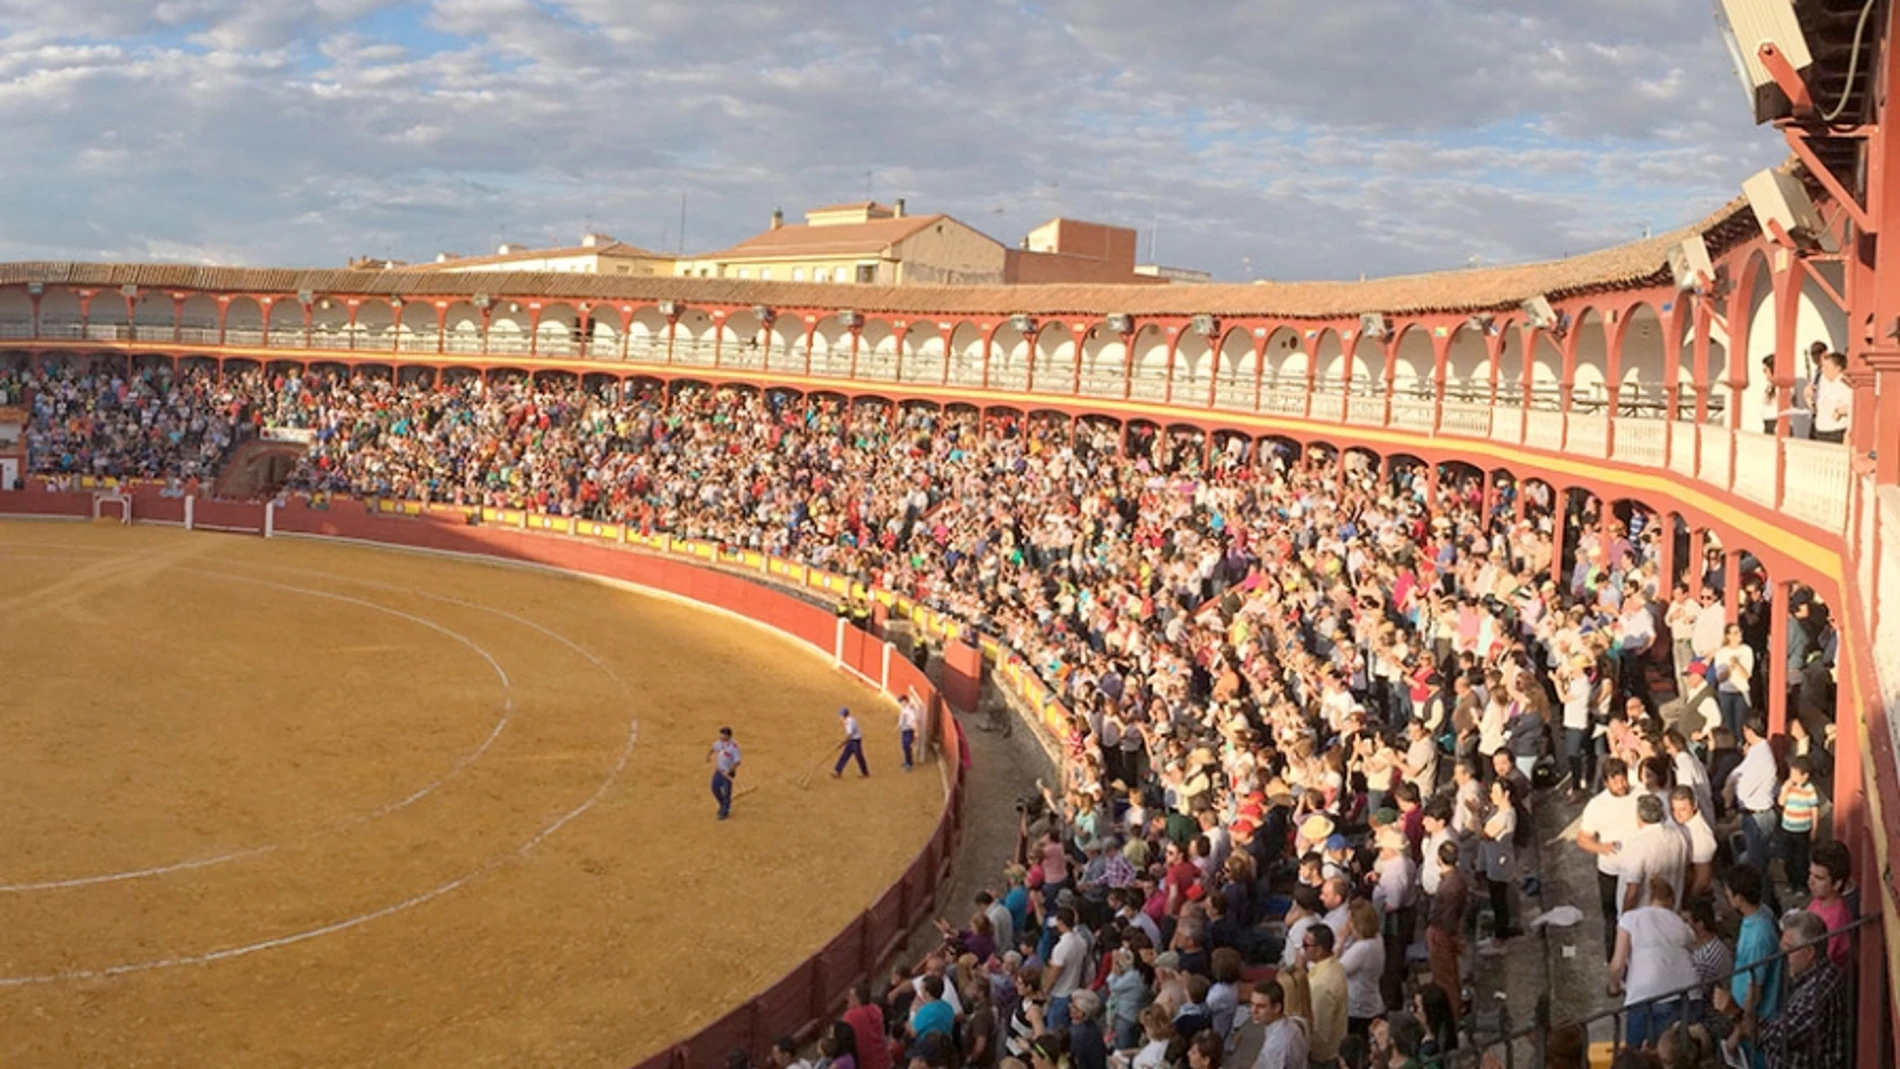 Imagen de la plaza de toros de Ciudad Real, abarrotada de gente